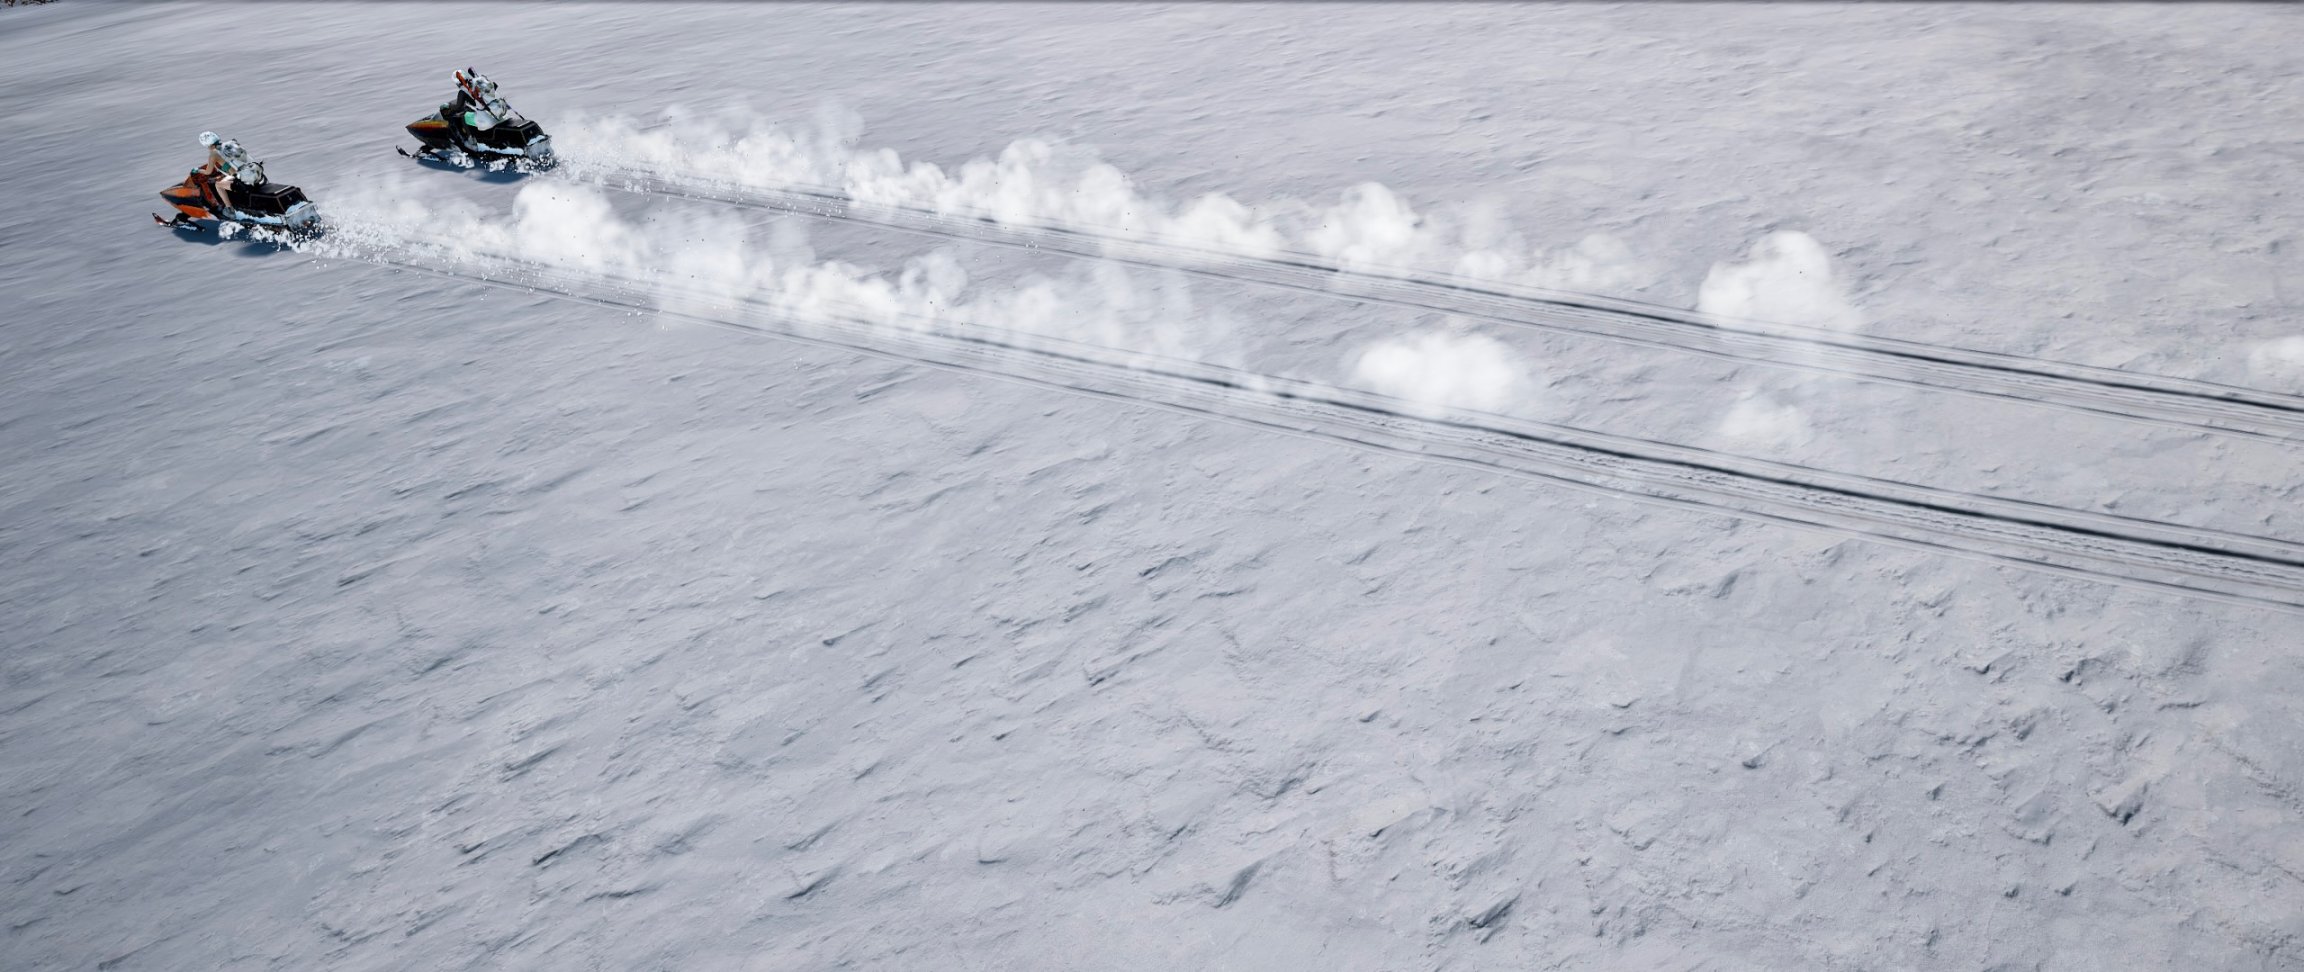 【絕地求生】#維寒迪競技場#    關於雪地圖的碎碎念-第15張